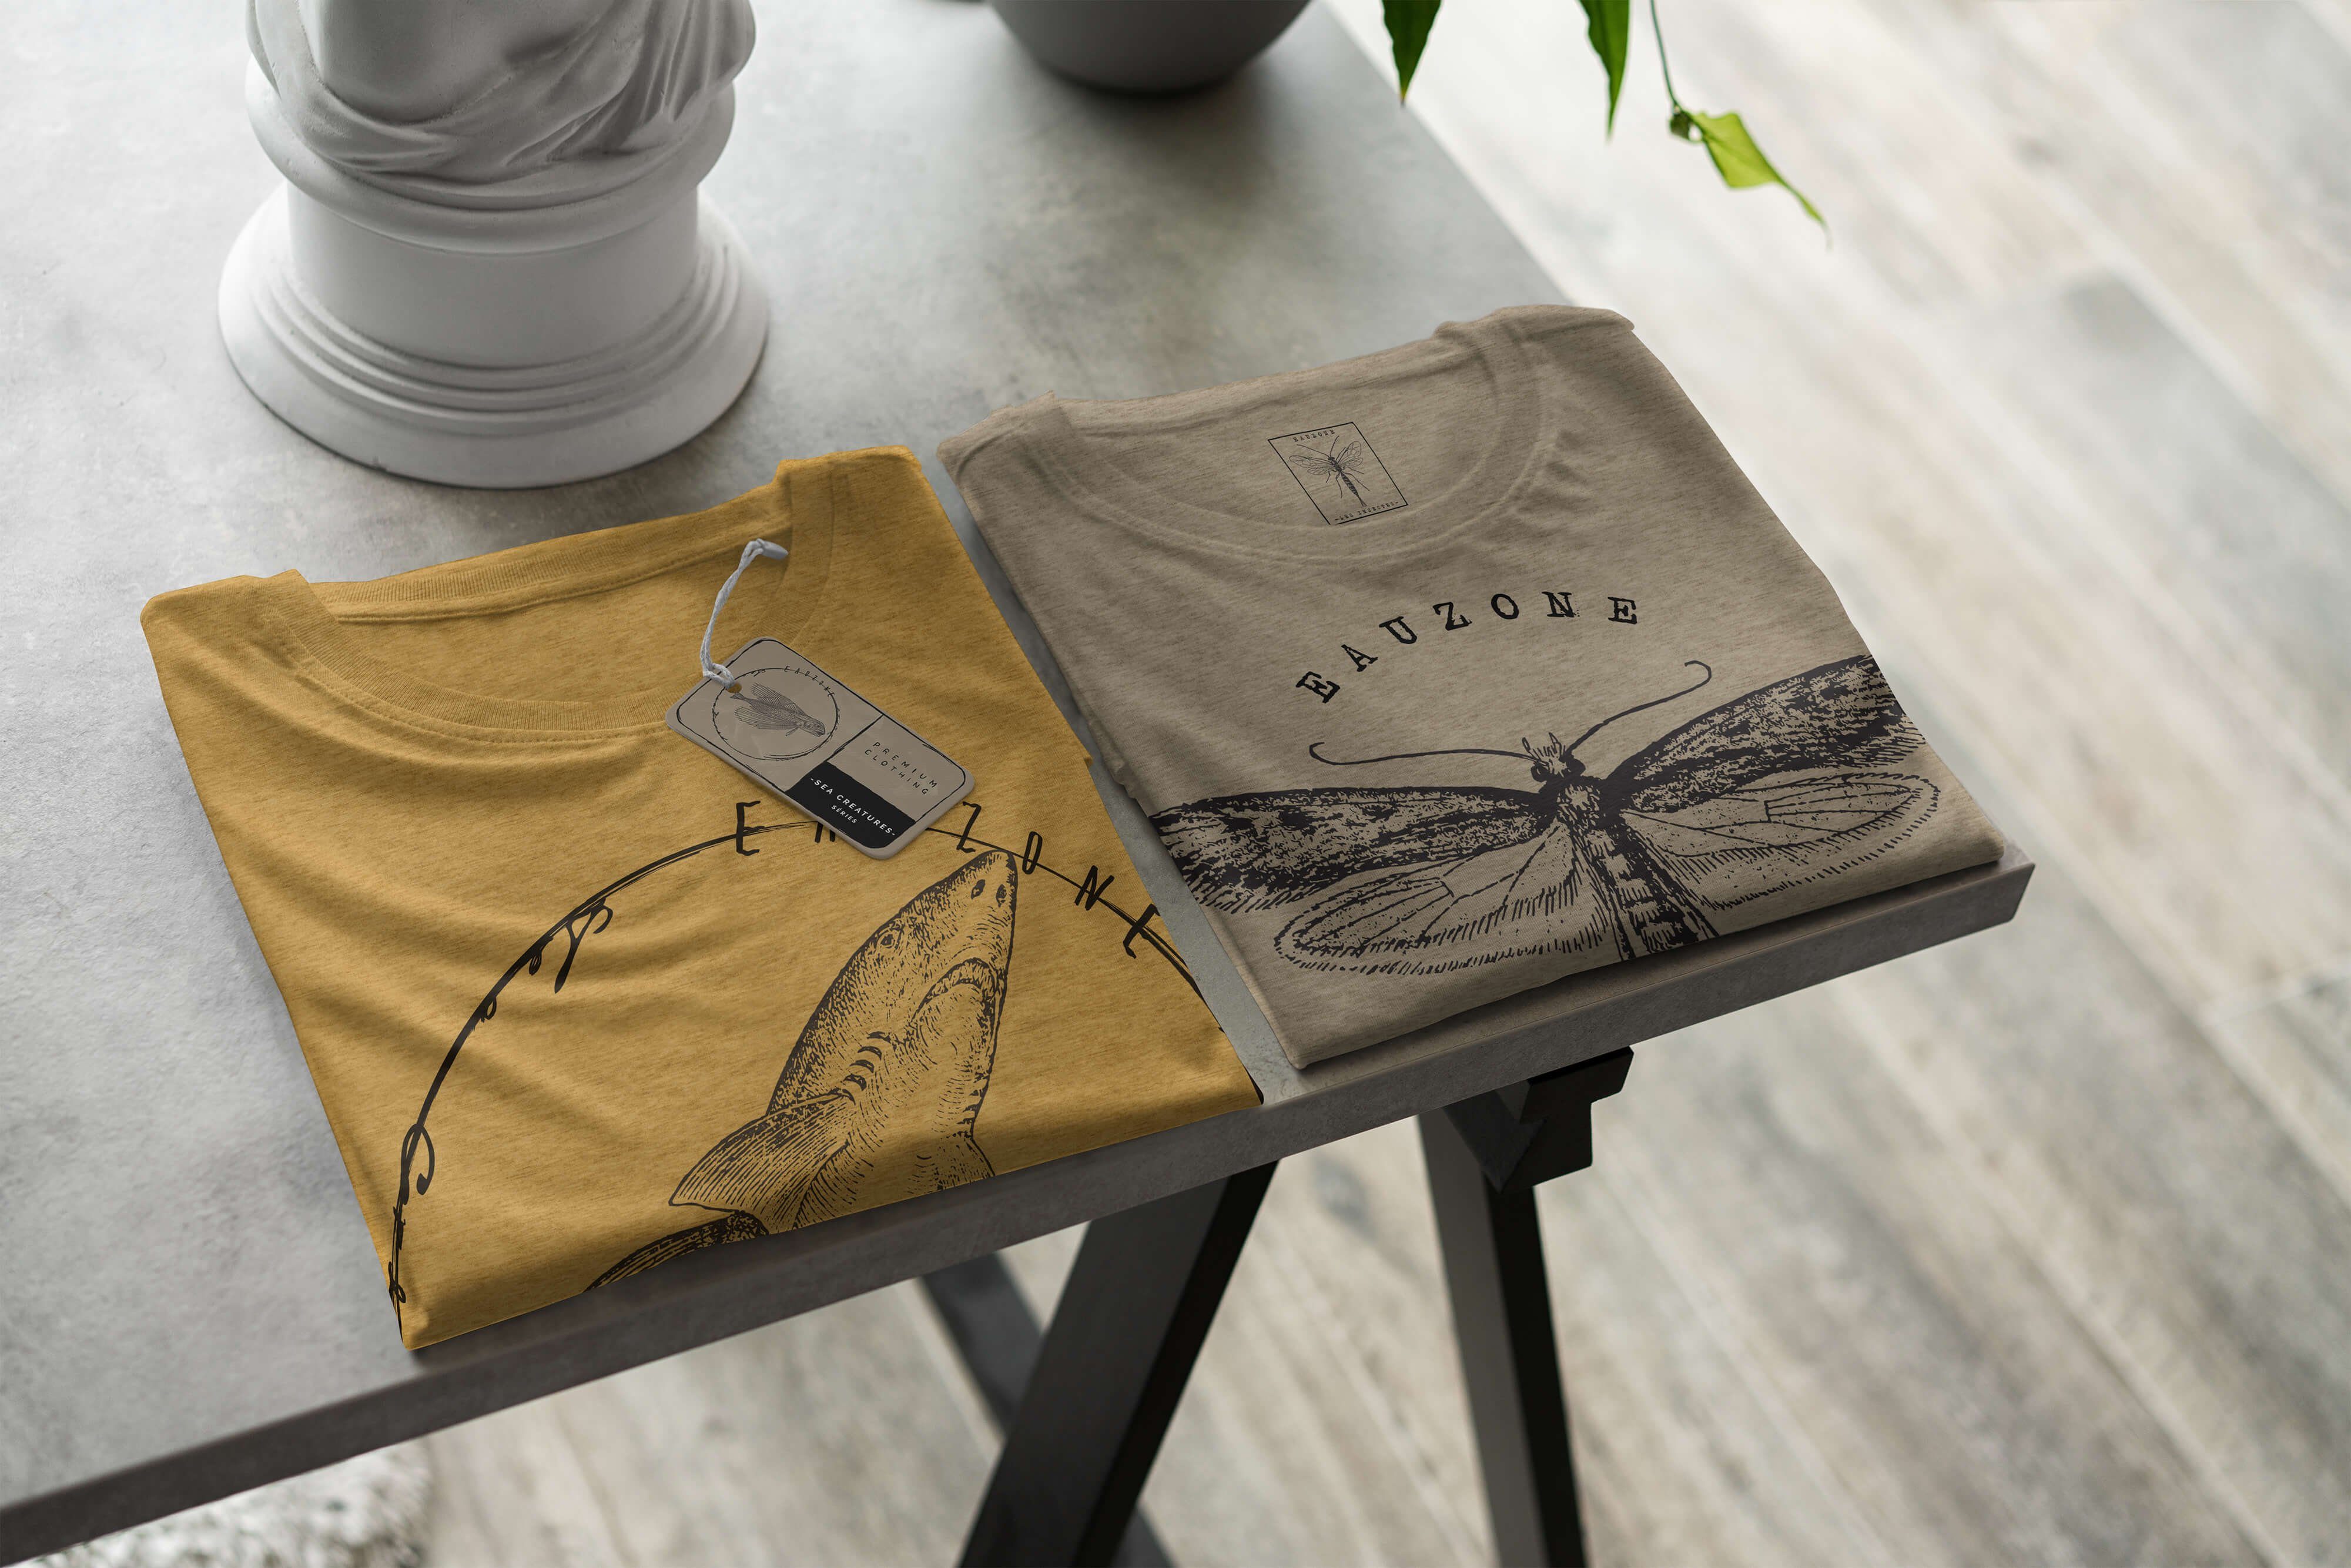 Schnitt Fische / Sea Sinus Antique - Struktur 095 sportlicher Sea Serie: feine T-Shirt T-Shirt Tiefsee Art Creatures, Gold und